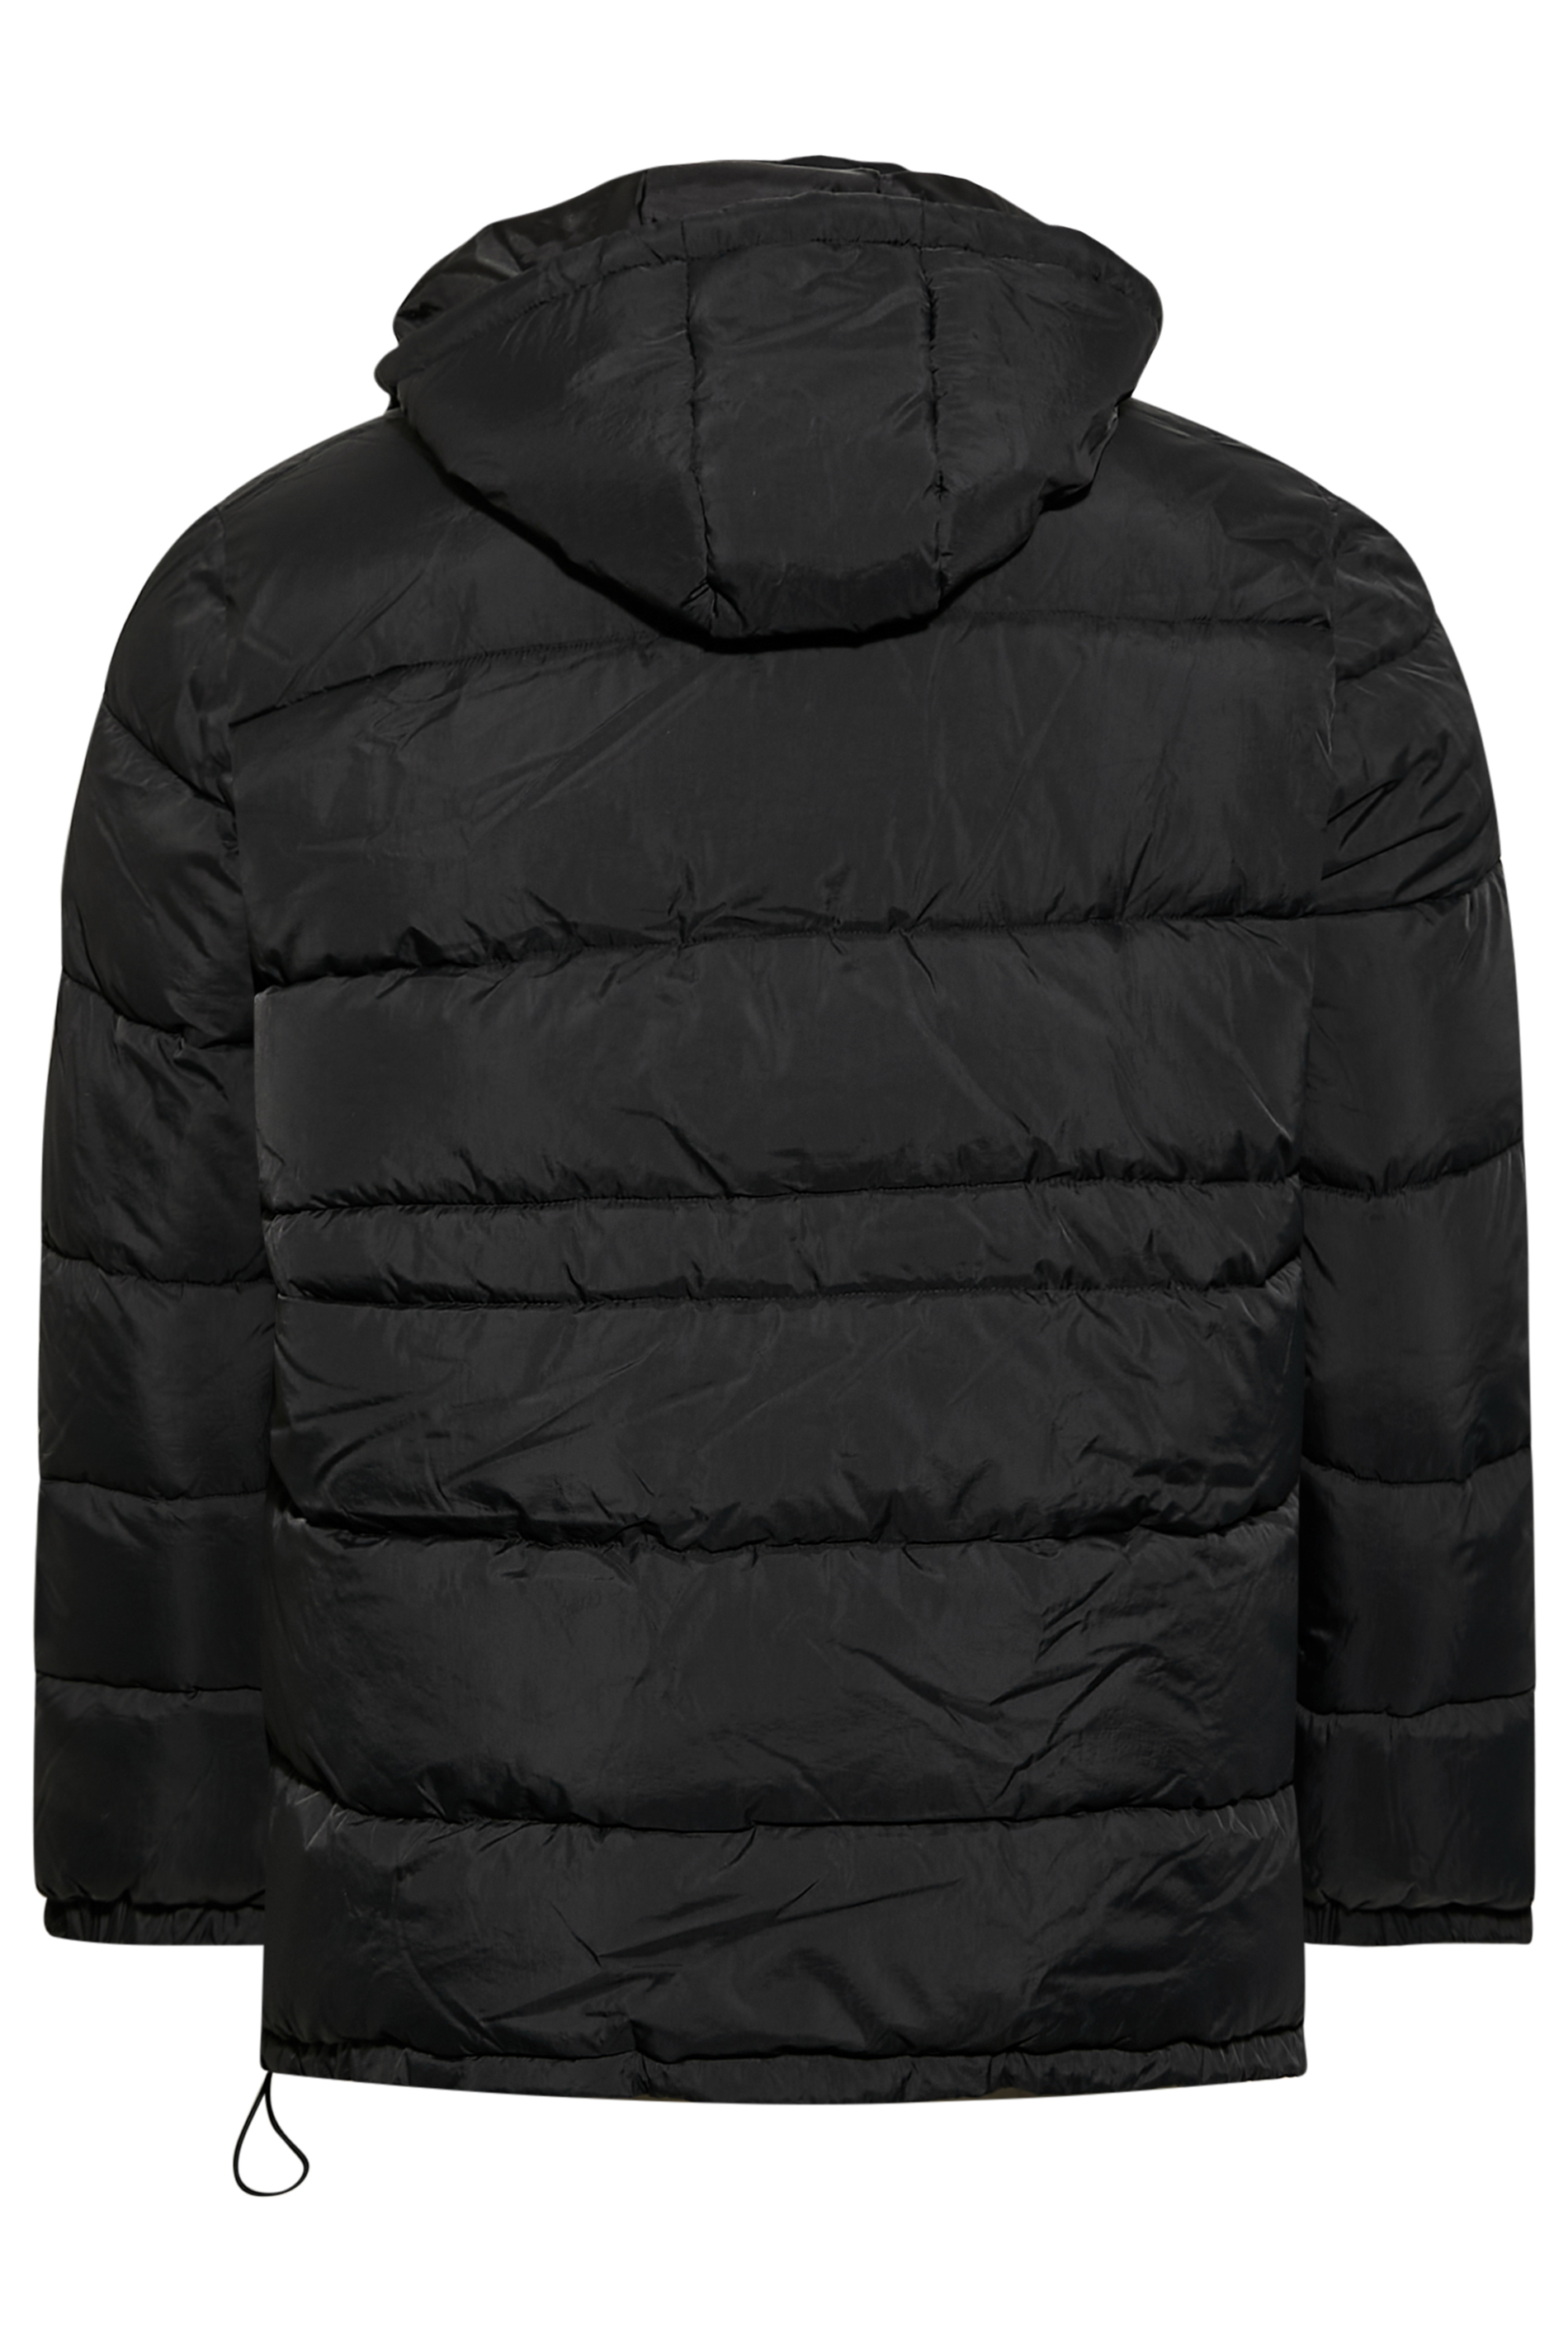 BadRhino Big & Tall Black Zip Puffer Jacket | BadRhino  3